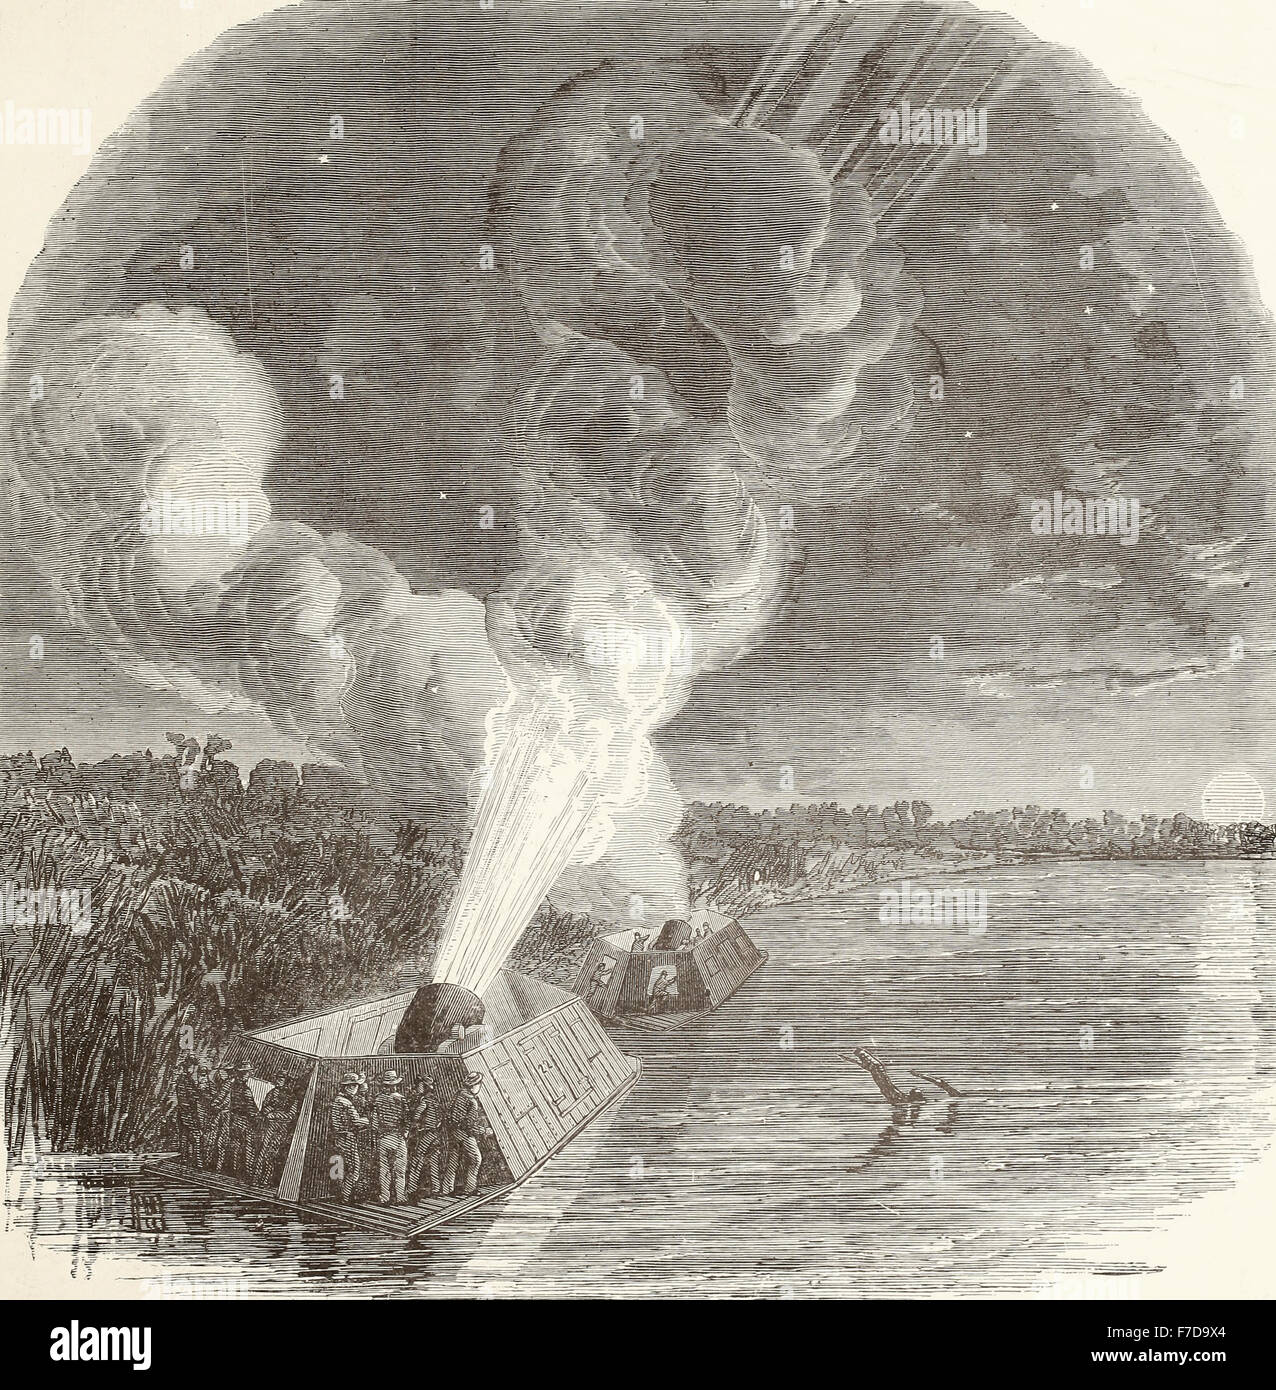 El asedio de la isla nº 10 sobre el Río Mississippi - noche de bombardeos por el mortero Federal barcos - 10:00 - 18 de marzo de 1862 - Guerra Civil EE.UU. Foto de stock